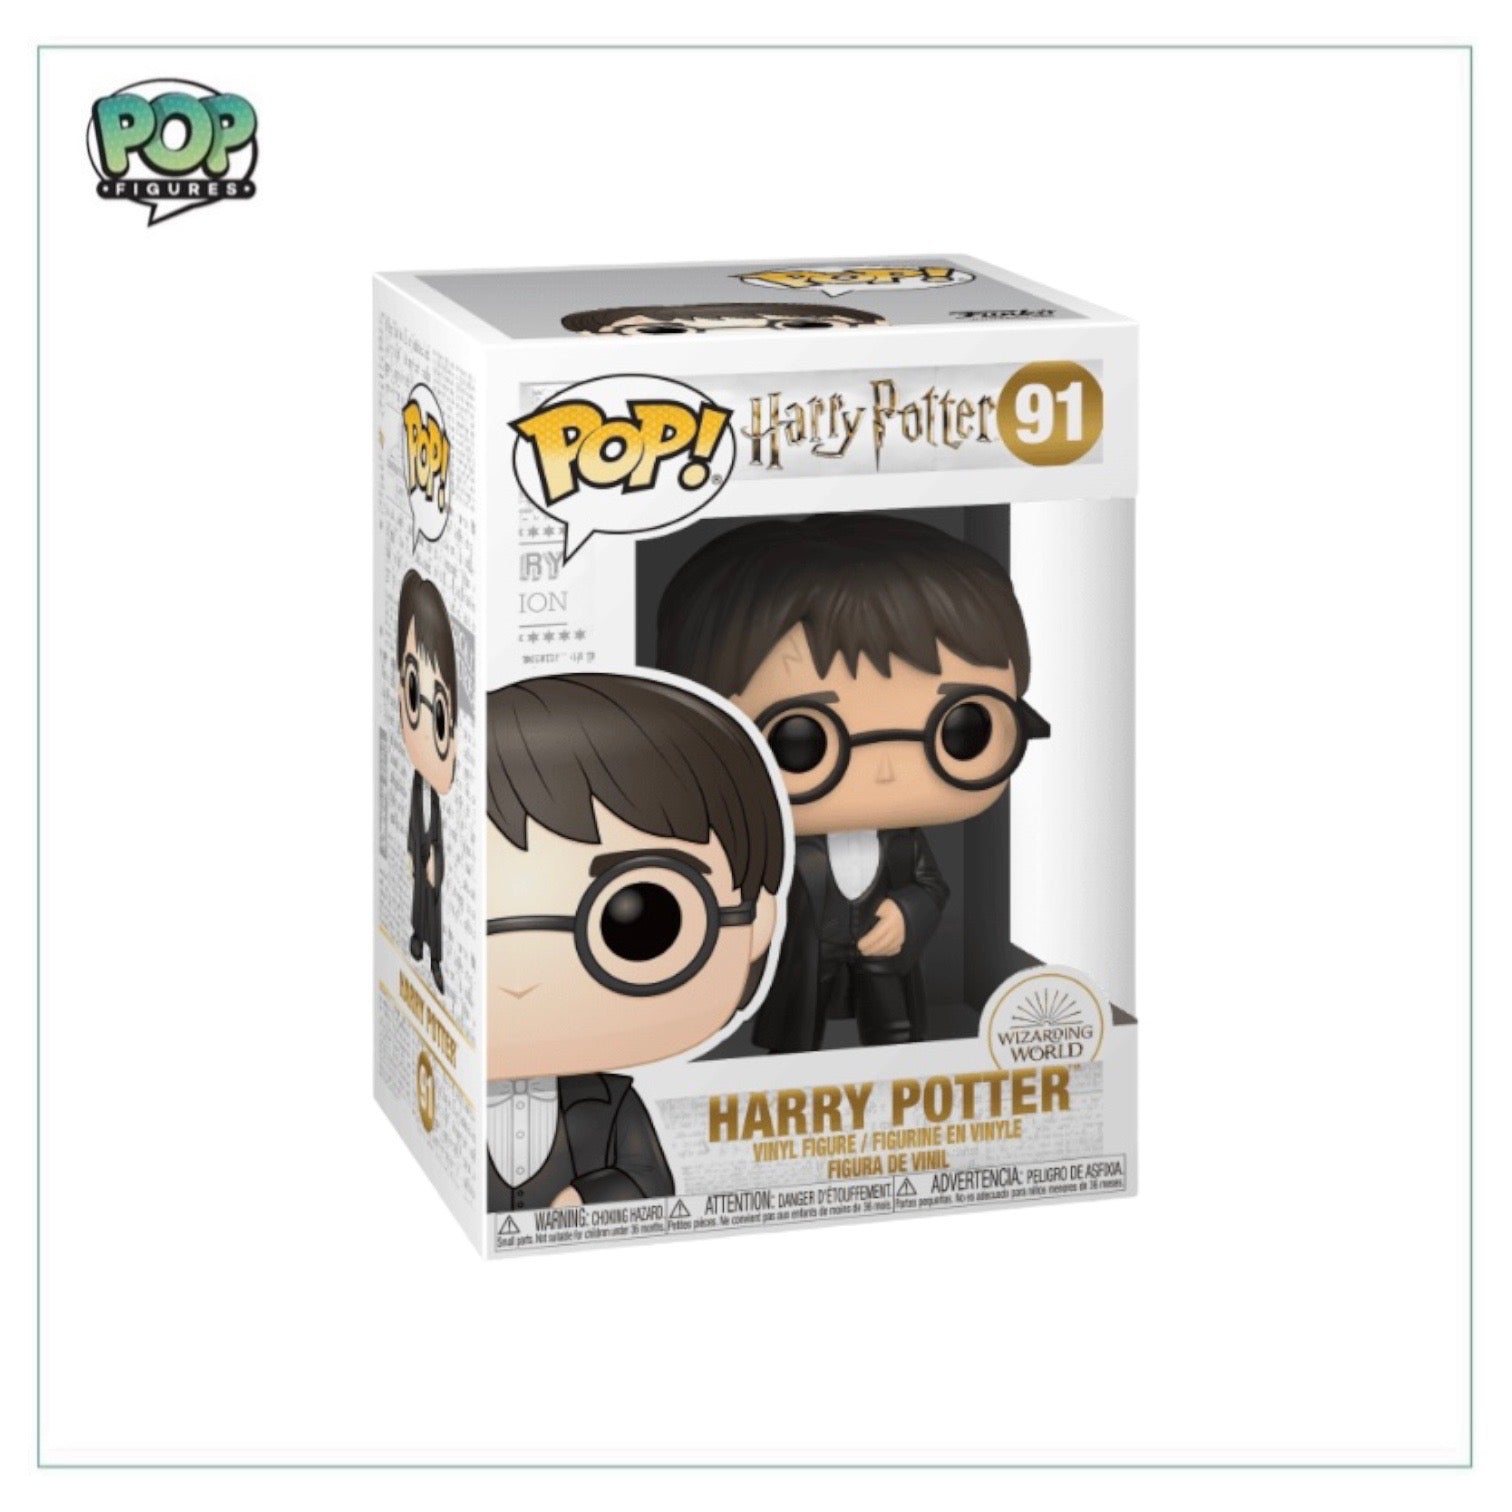 Harry Potter #91 (Yule Ball) Funko Pop! - Harry Potter